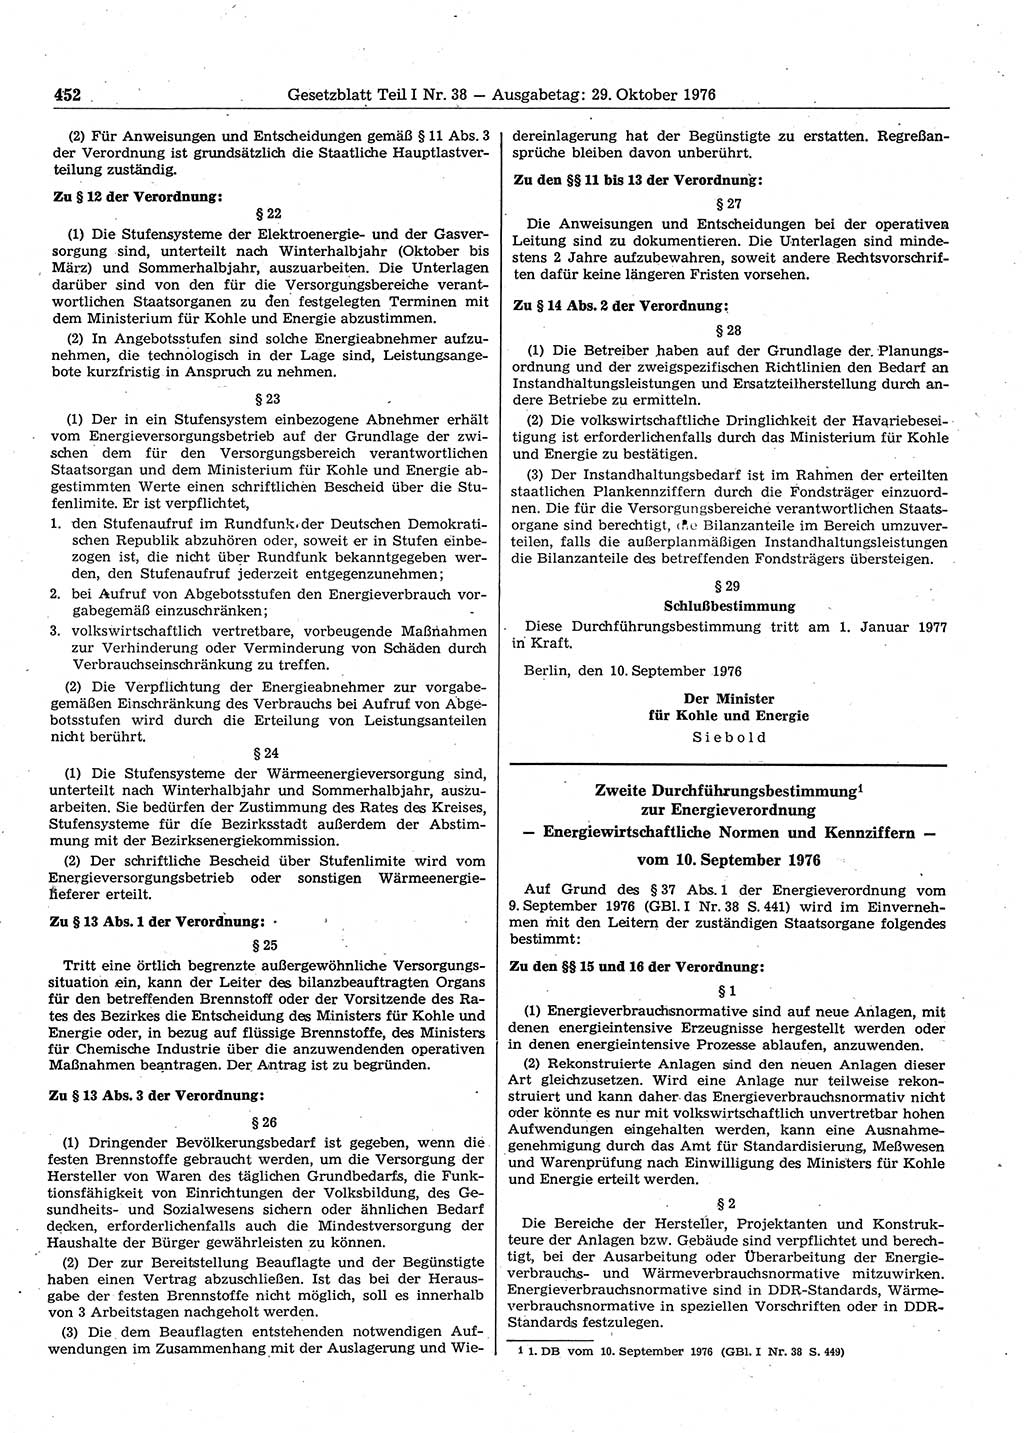 Gesetzblatt (GBl.) der Deutschen Demokratischen Republik (DDR) Teil Ⅰ 1976, Seite 452 (GBl. DDR Ⅰ 1976, S. 452)